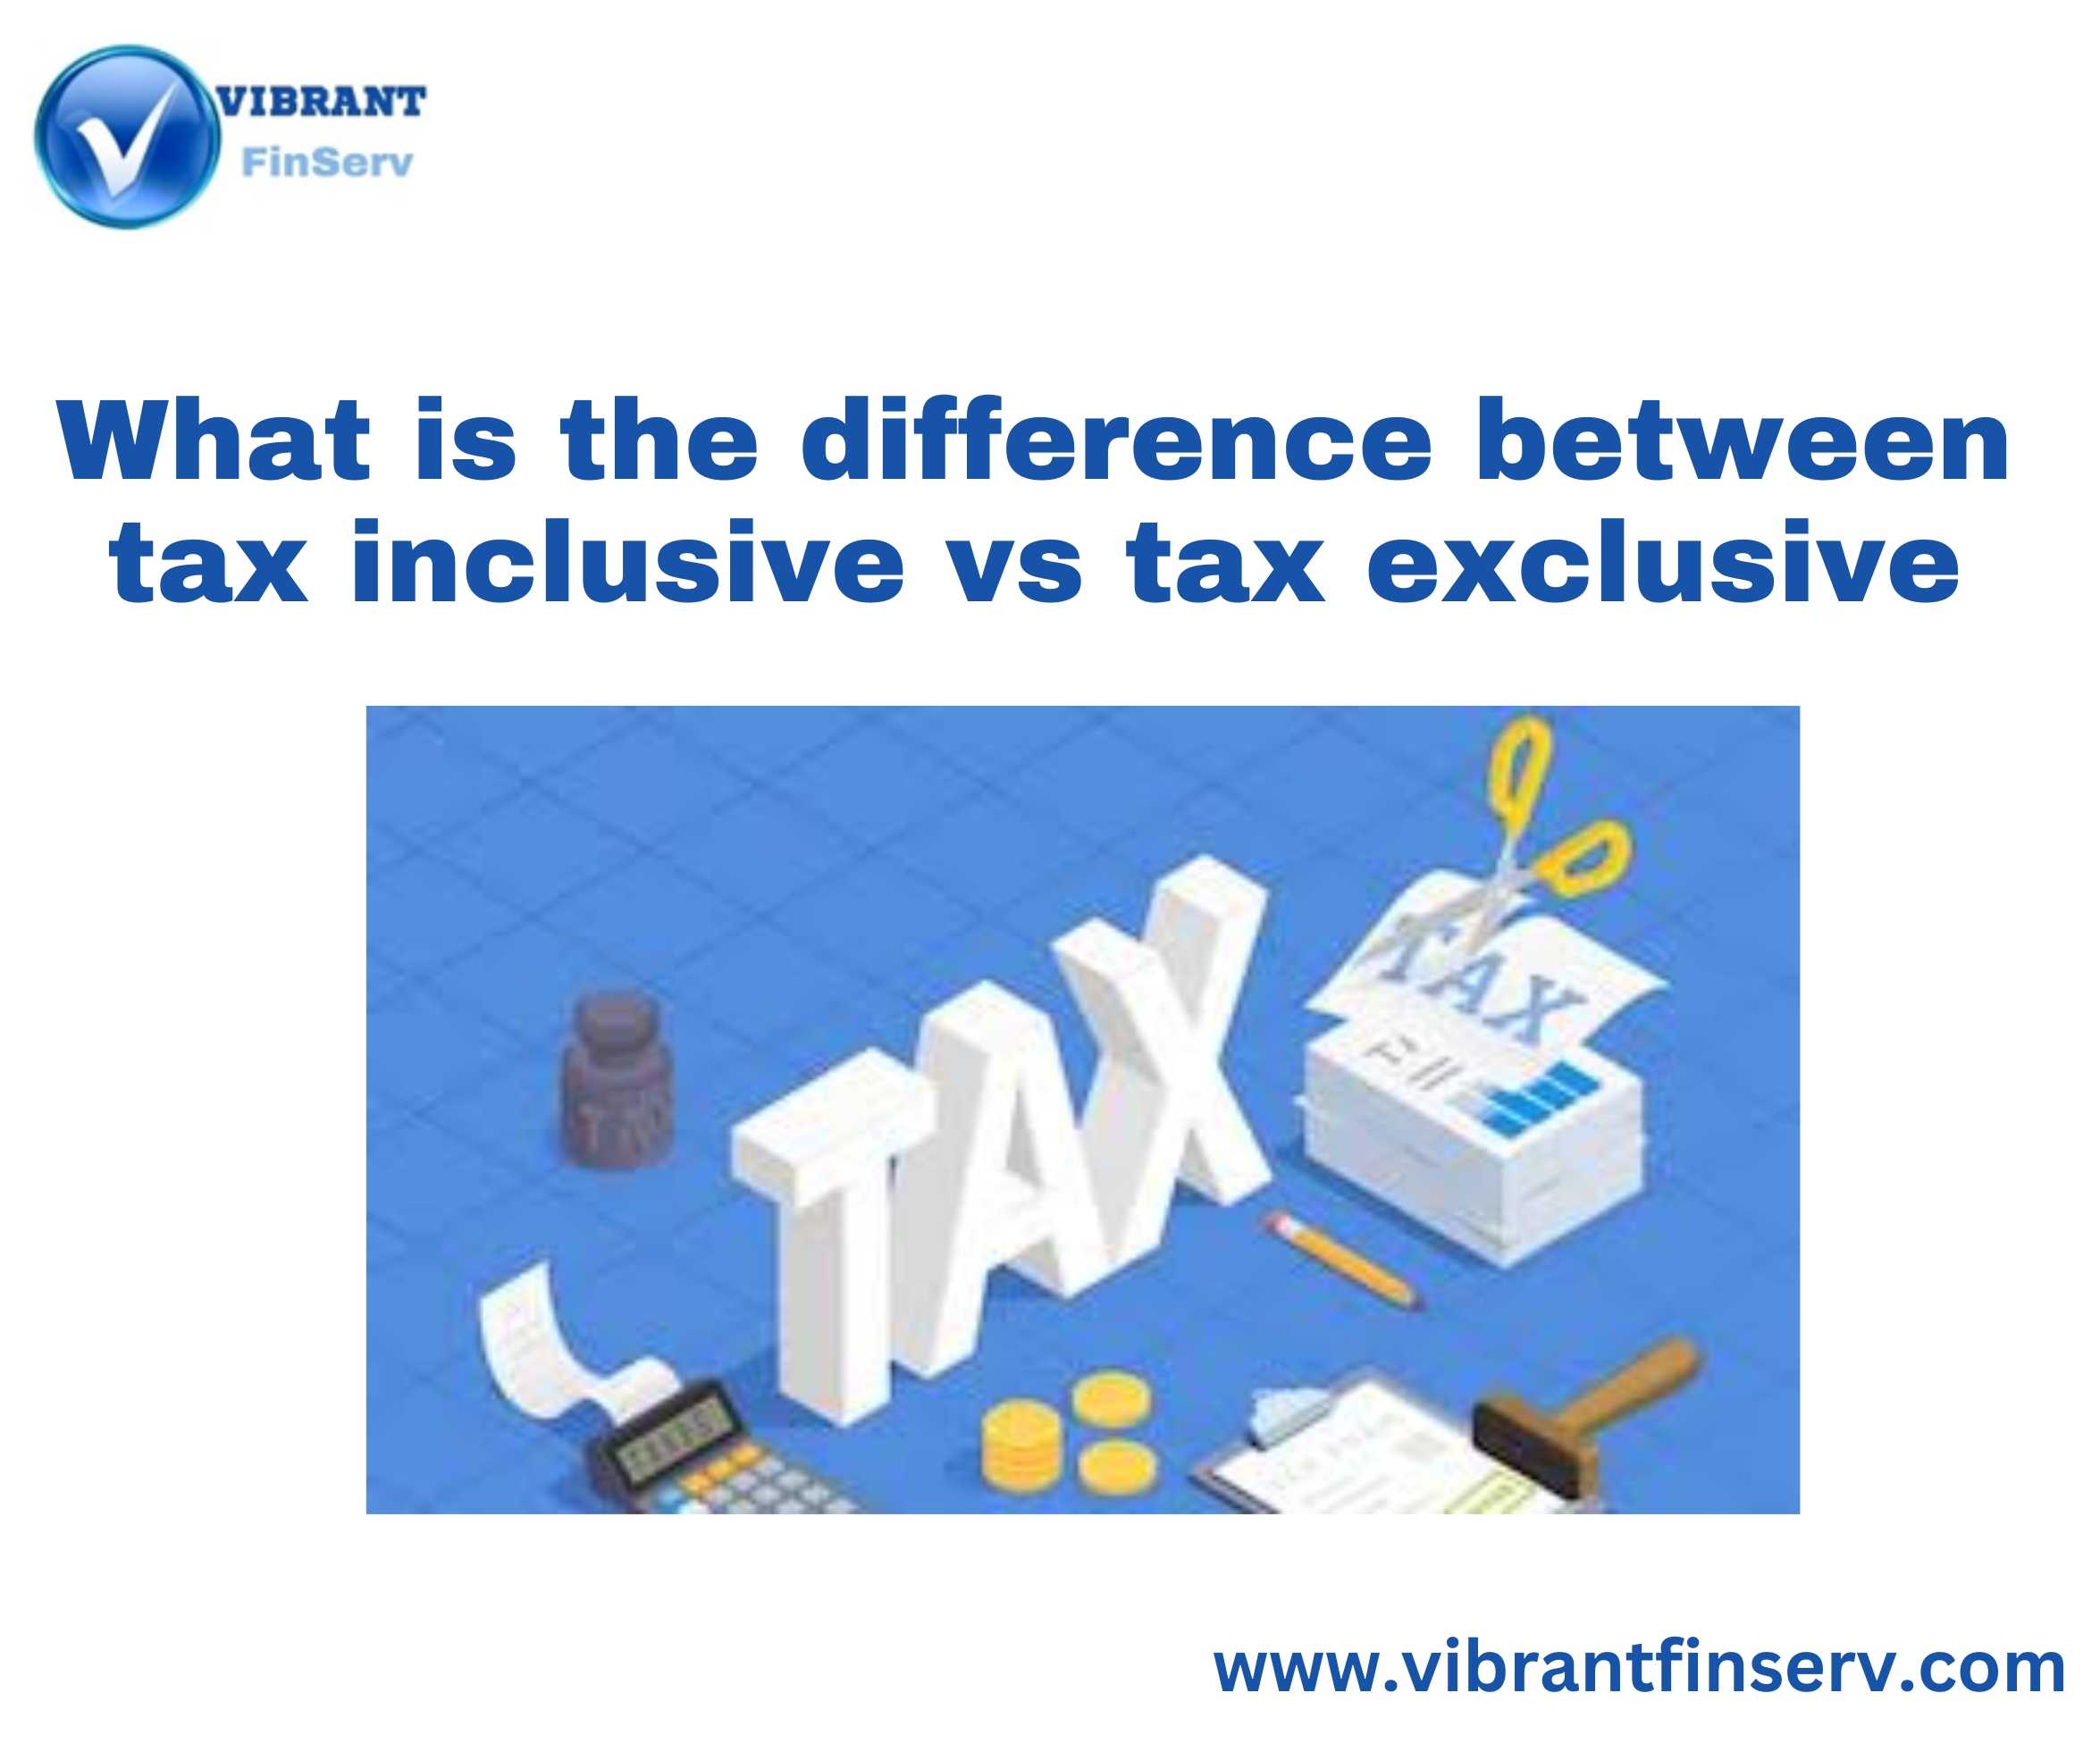 Tax Inclusive vs Tax Exclusive